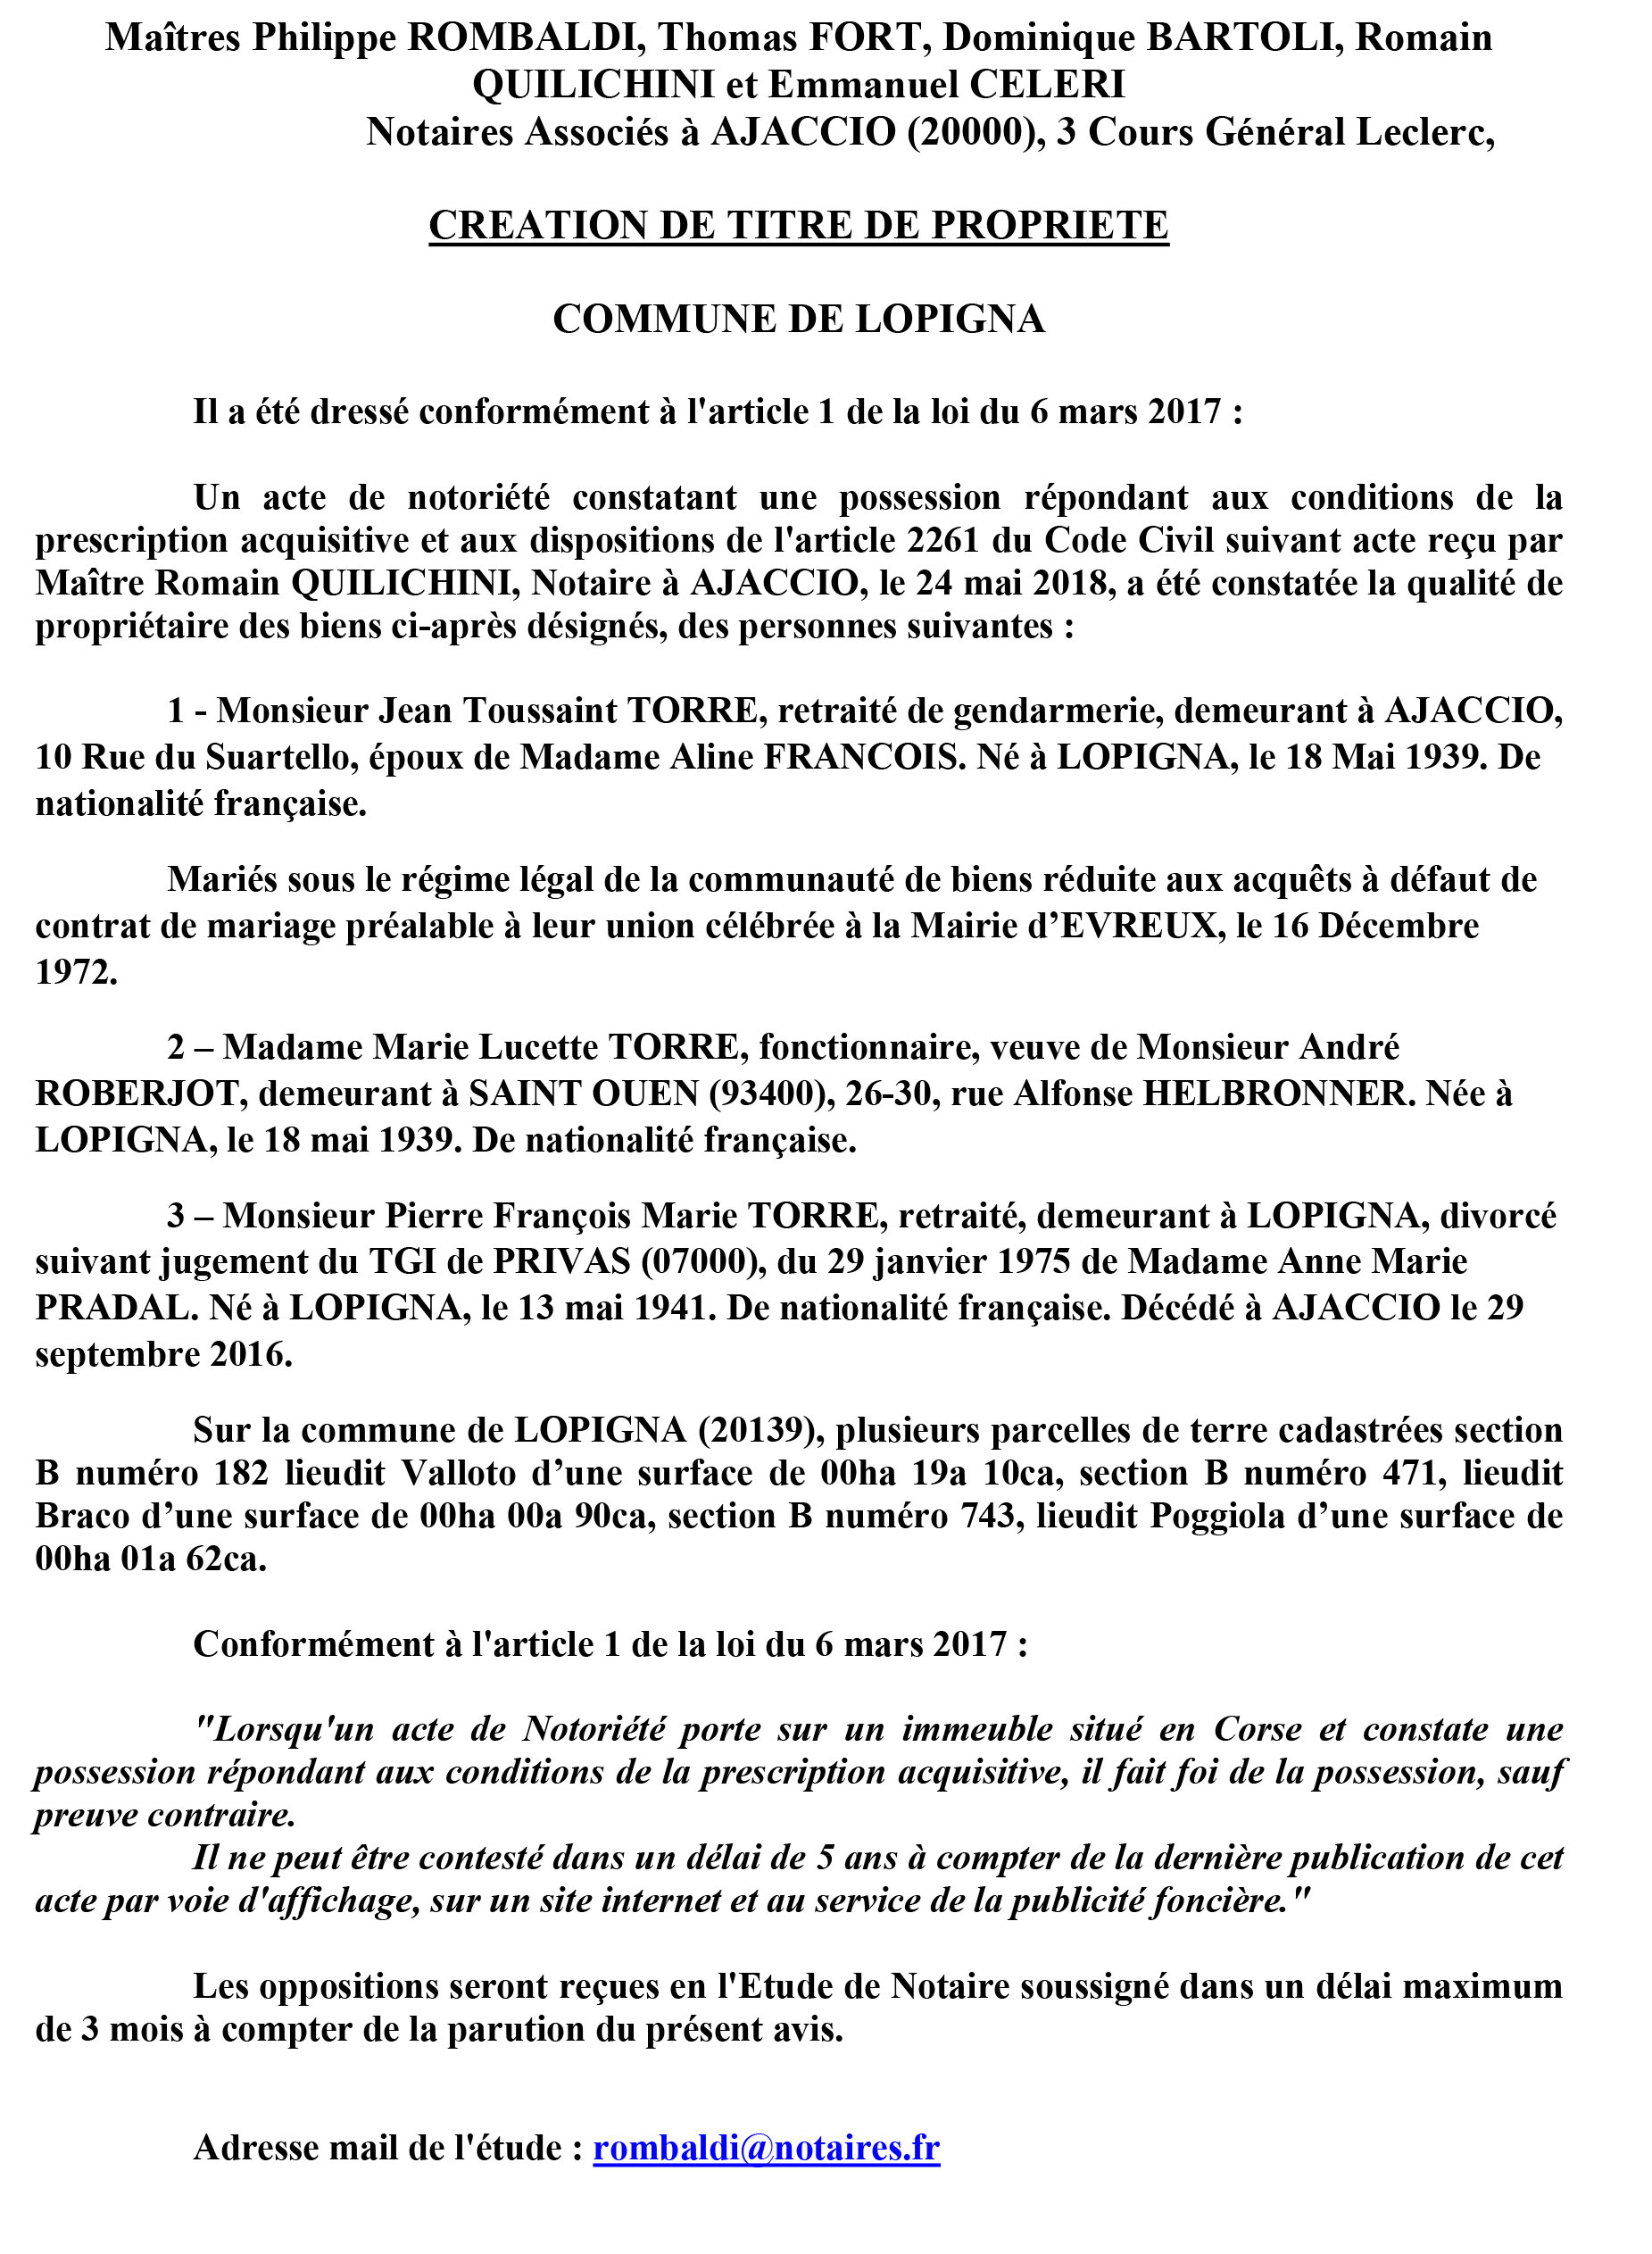 Avis de création de titre de propriété - commune de Lopigna (Corse du Sud)